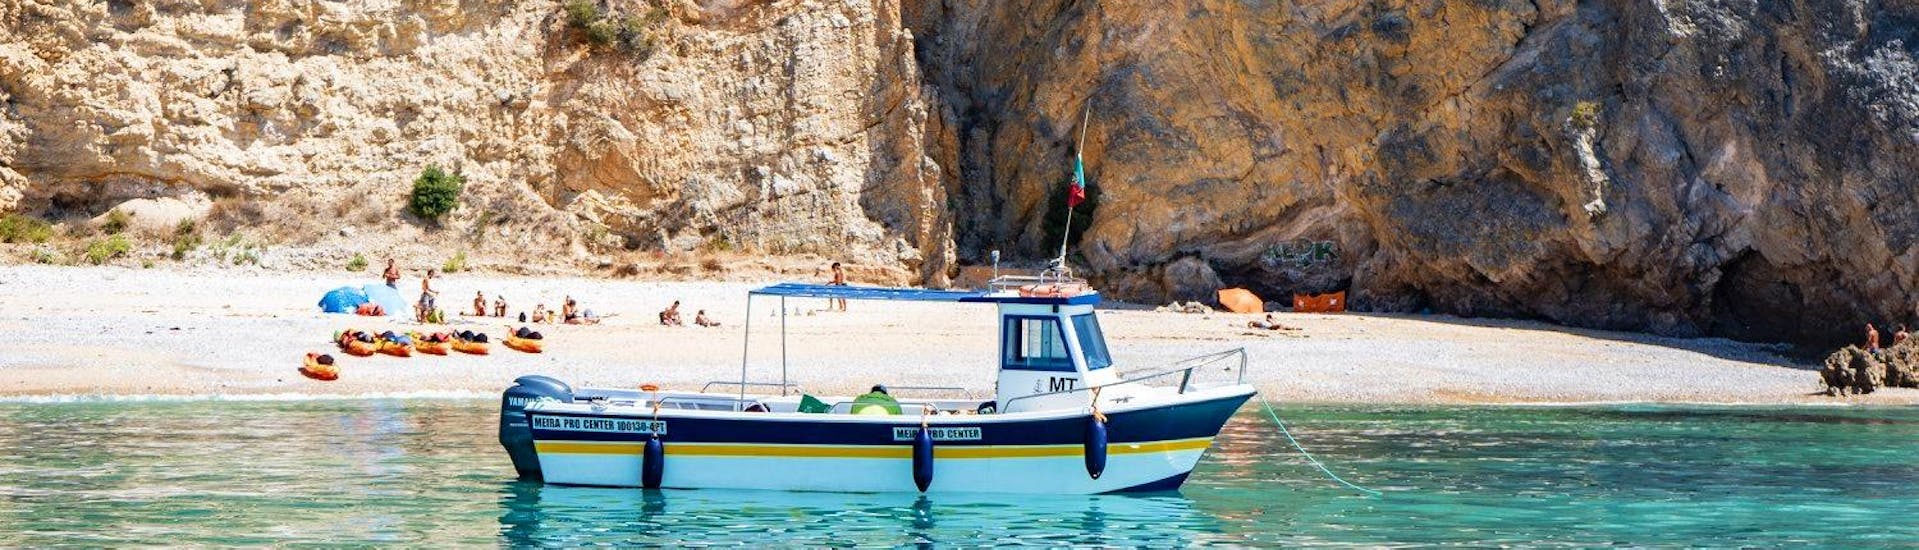 Gita in barca da Sesimbra a Parco Naturale di Arrábida con bagno in mare e visita turistica.